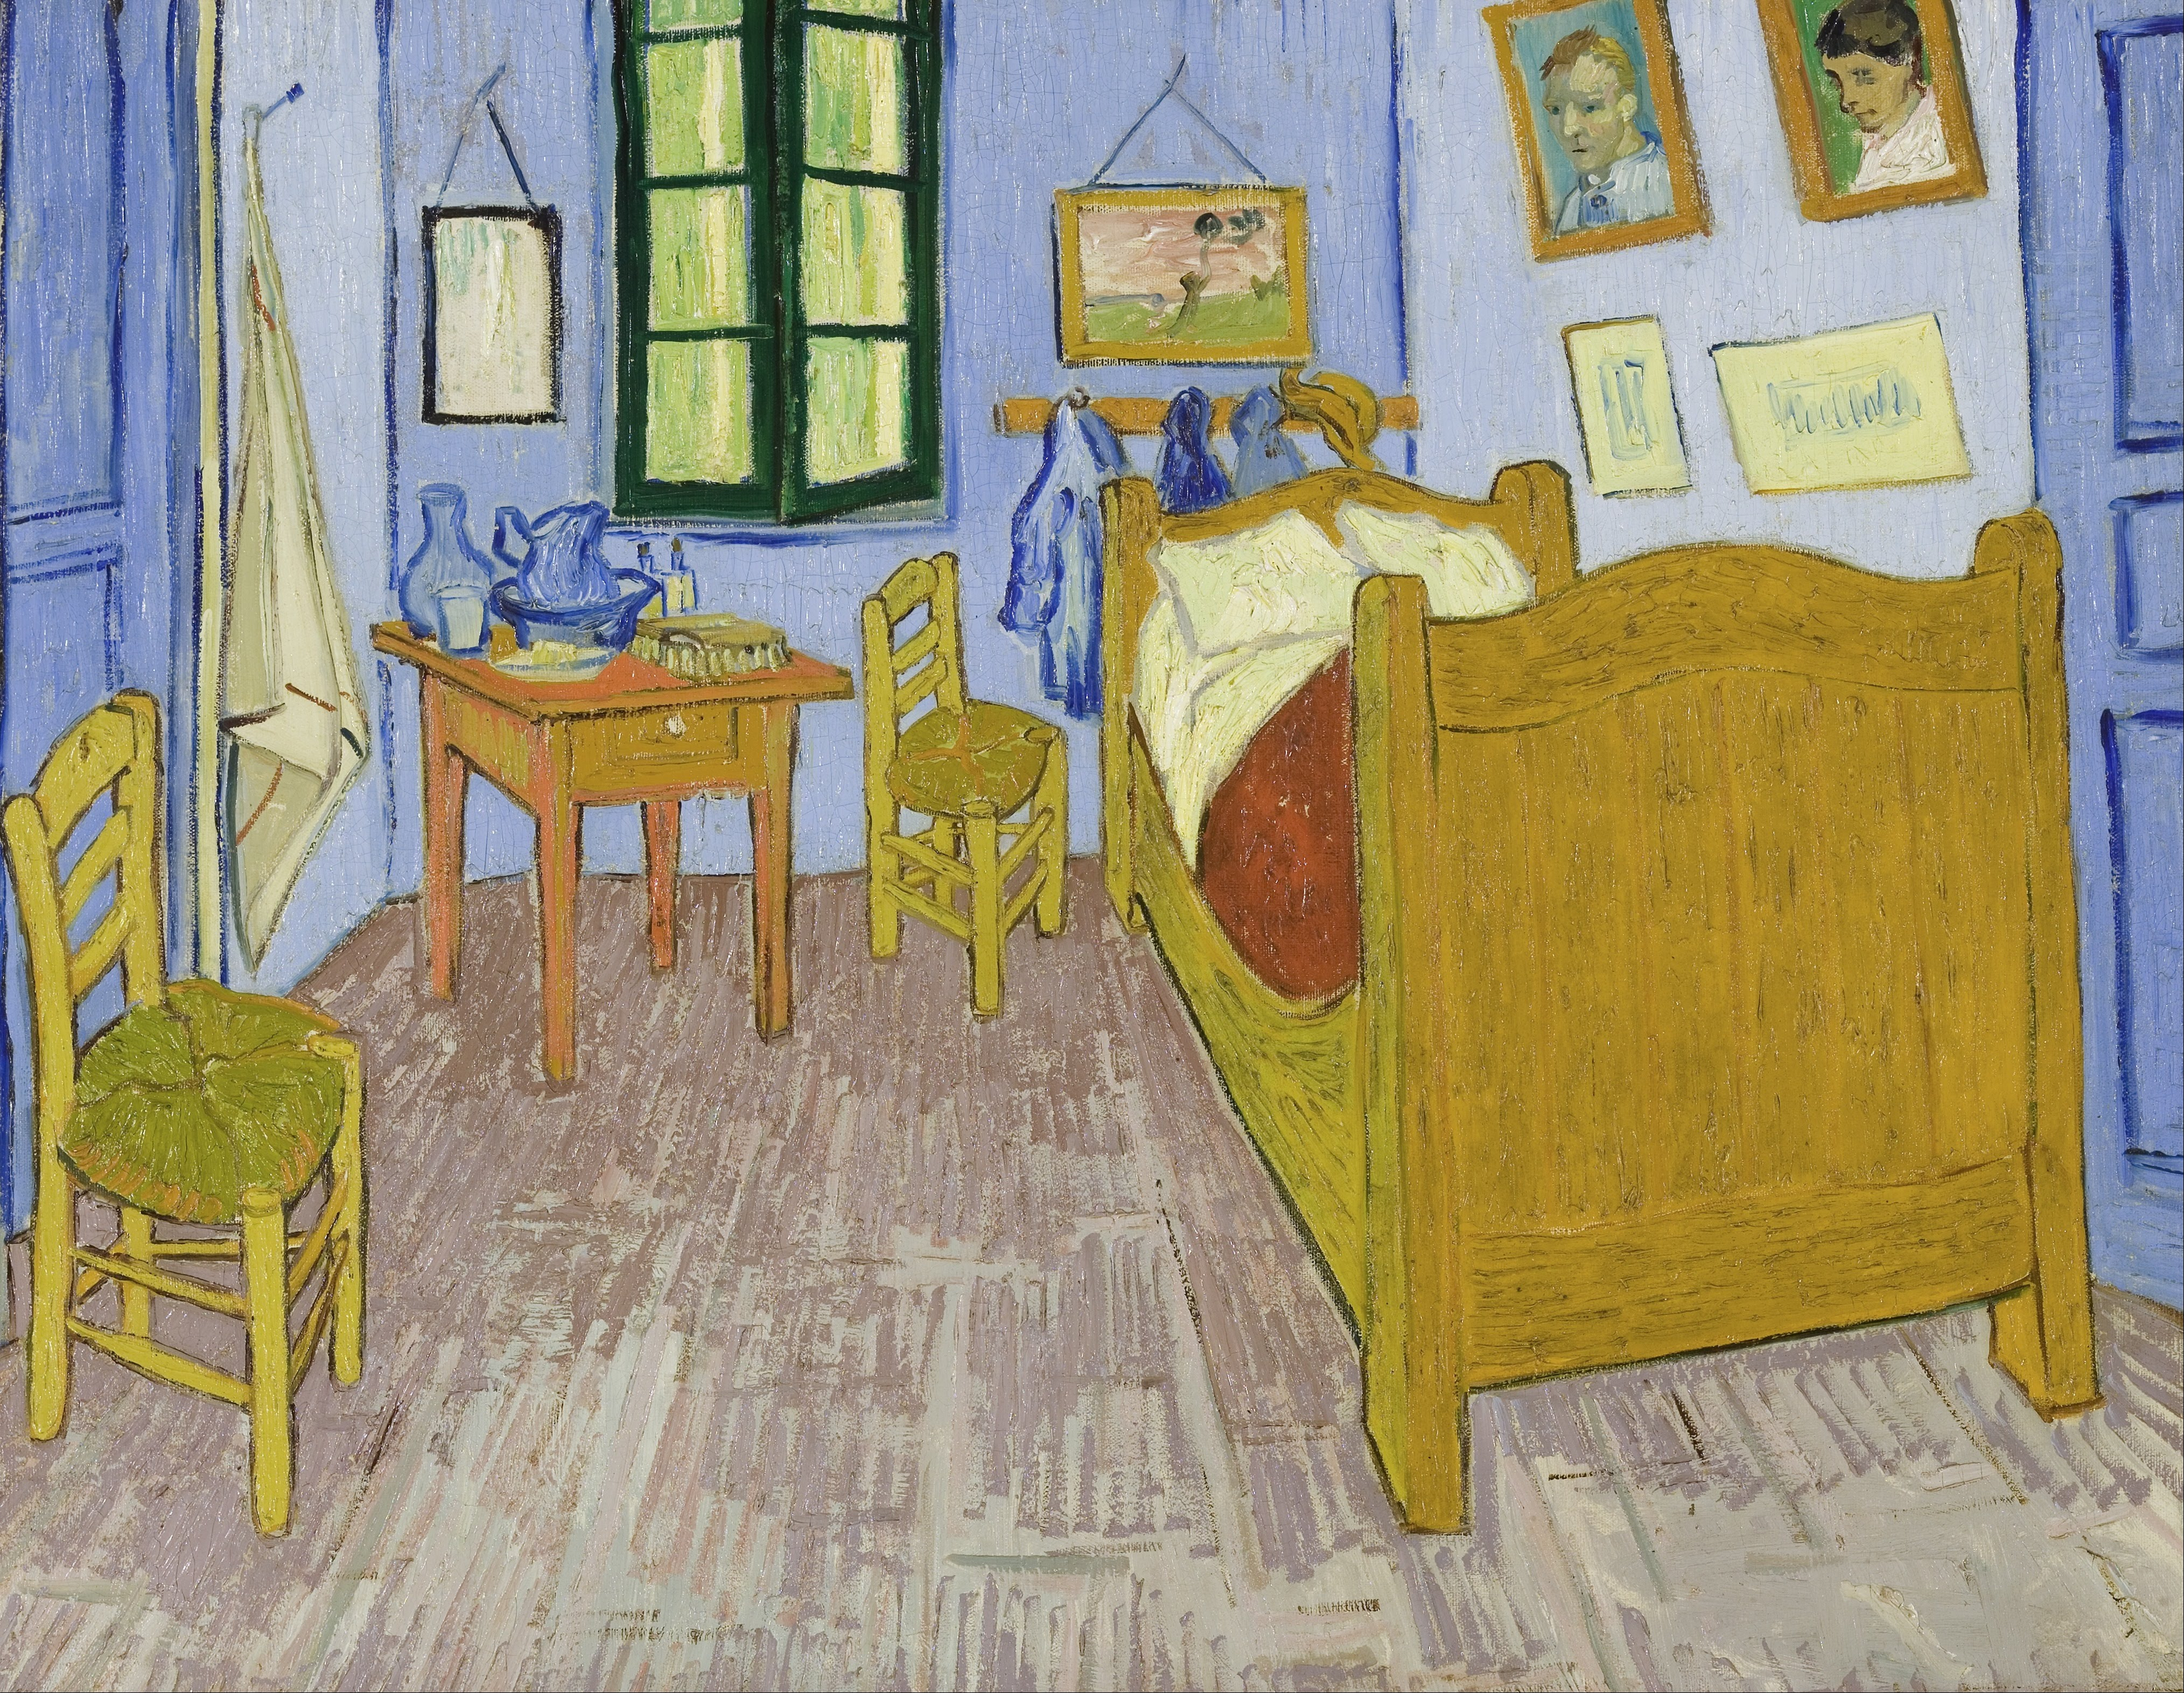 Спальня в Арле by Винсе́нт Виллем Ван Гог - 1888 - 72 x 90 см 